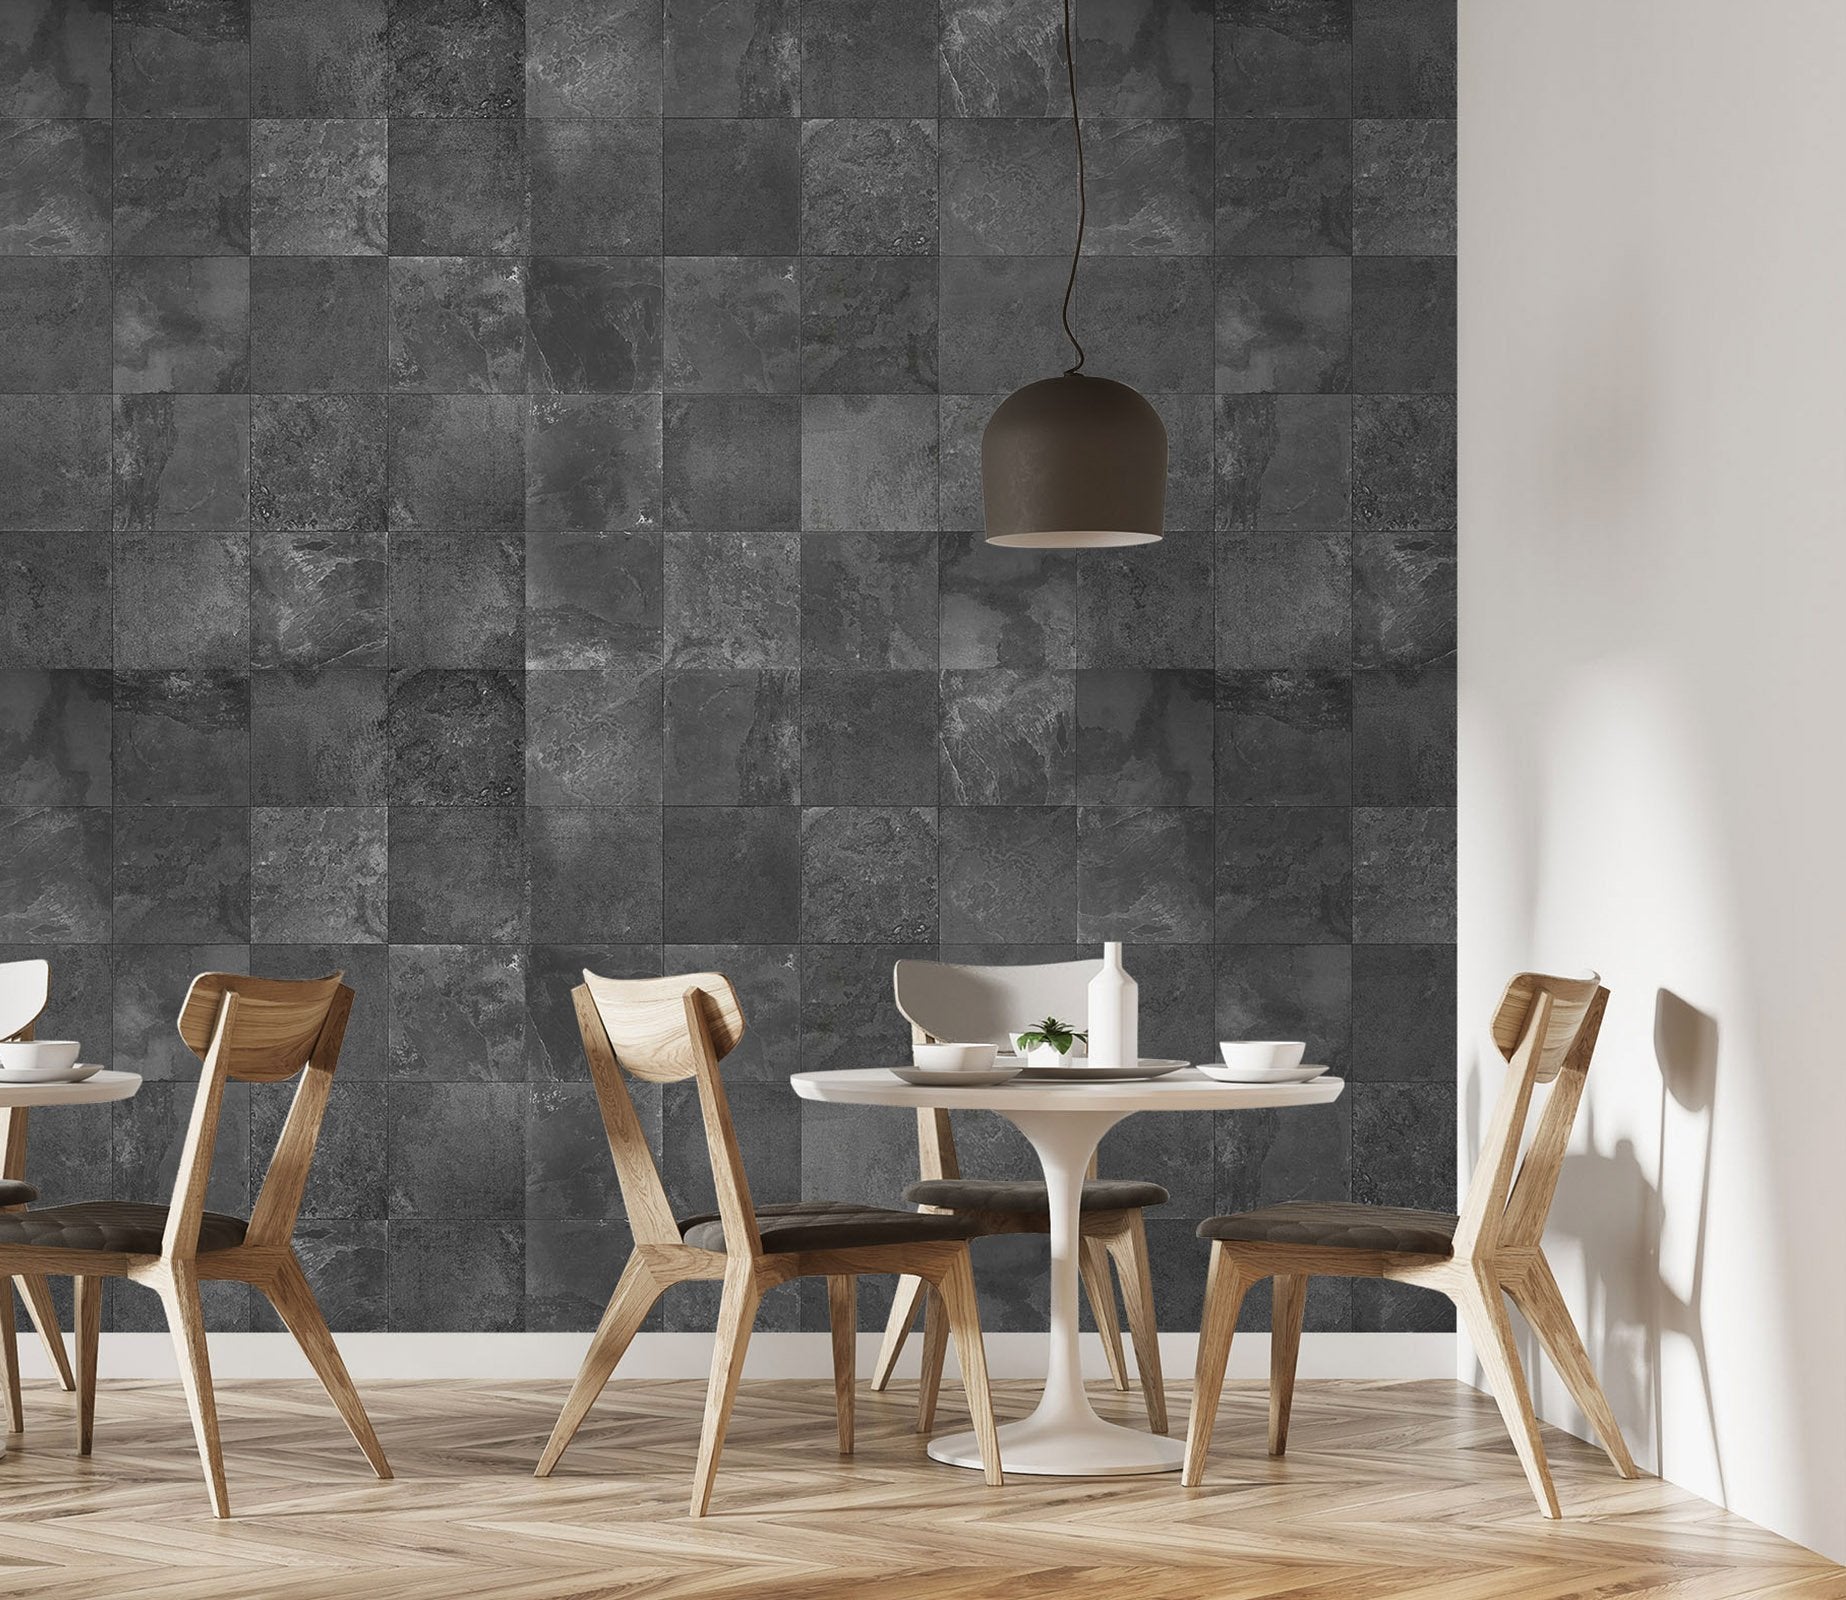 Gạch đá hoa văn 3D màu xám 045 của AJ Wallpaper sẽ mang đến cho không gian nhà bạn một diện mạo mới hoàn toàn. Với đường nét rõ ràng và chất liệu đẹp mắt, không chỉ giúp tăng tính thẩm mỹ mà còn tạo cảm giác thoải mái và gần gũi với thiên nhiên.